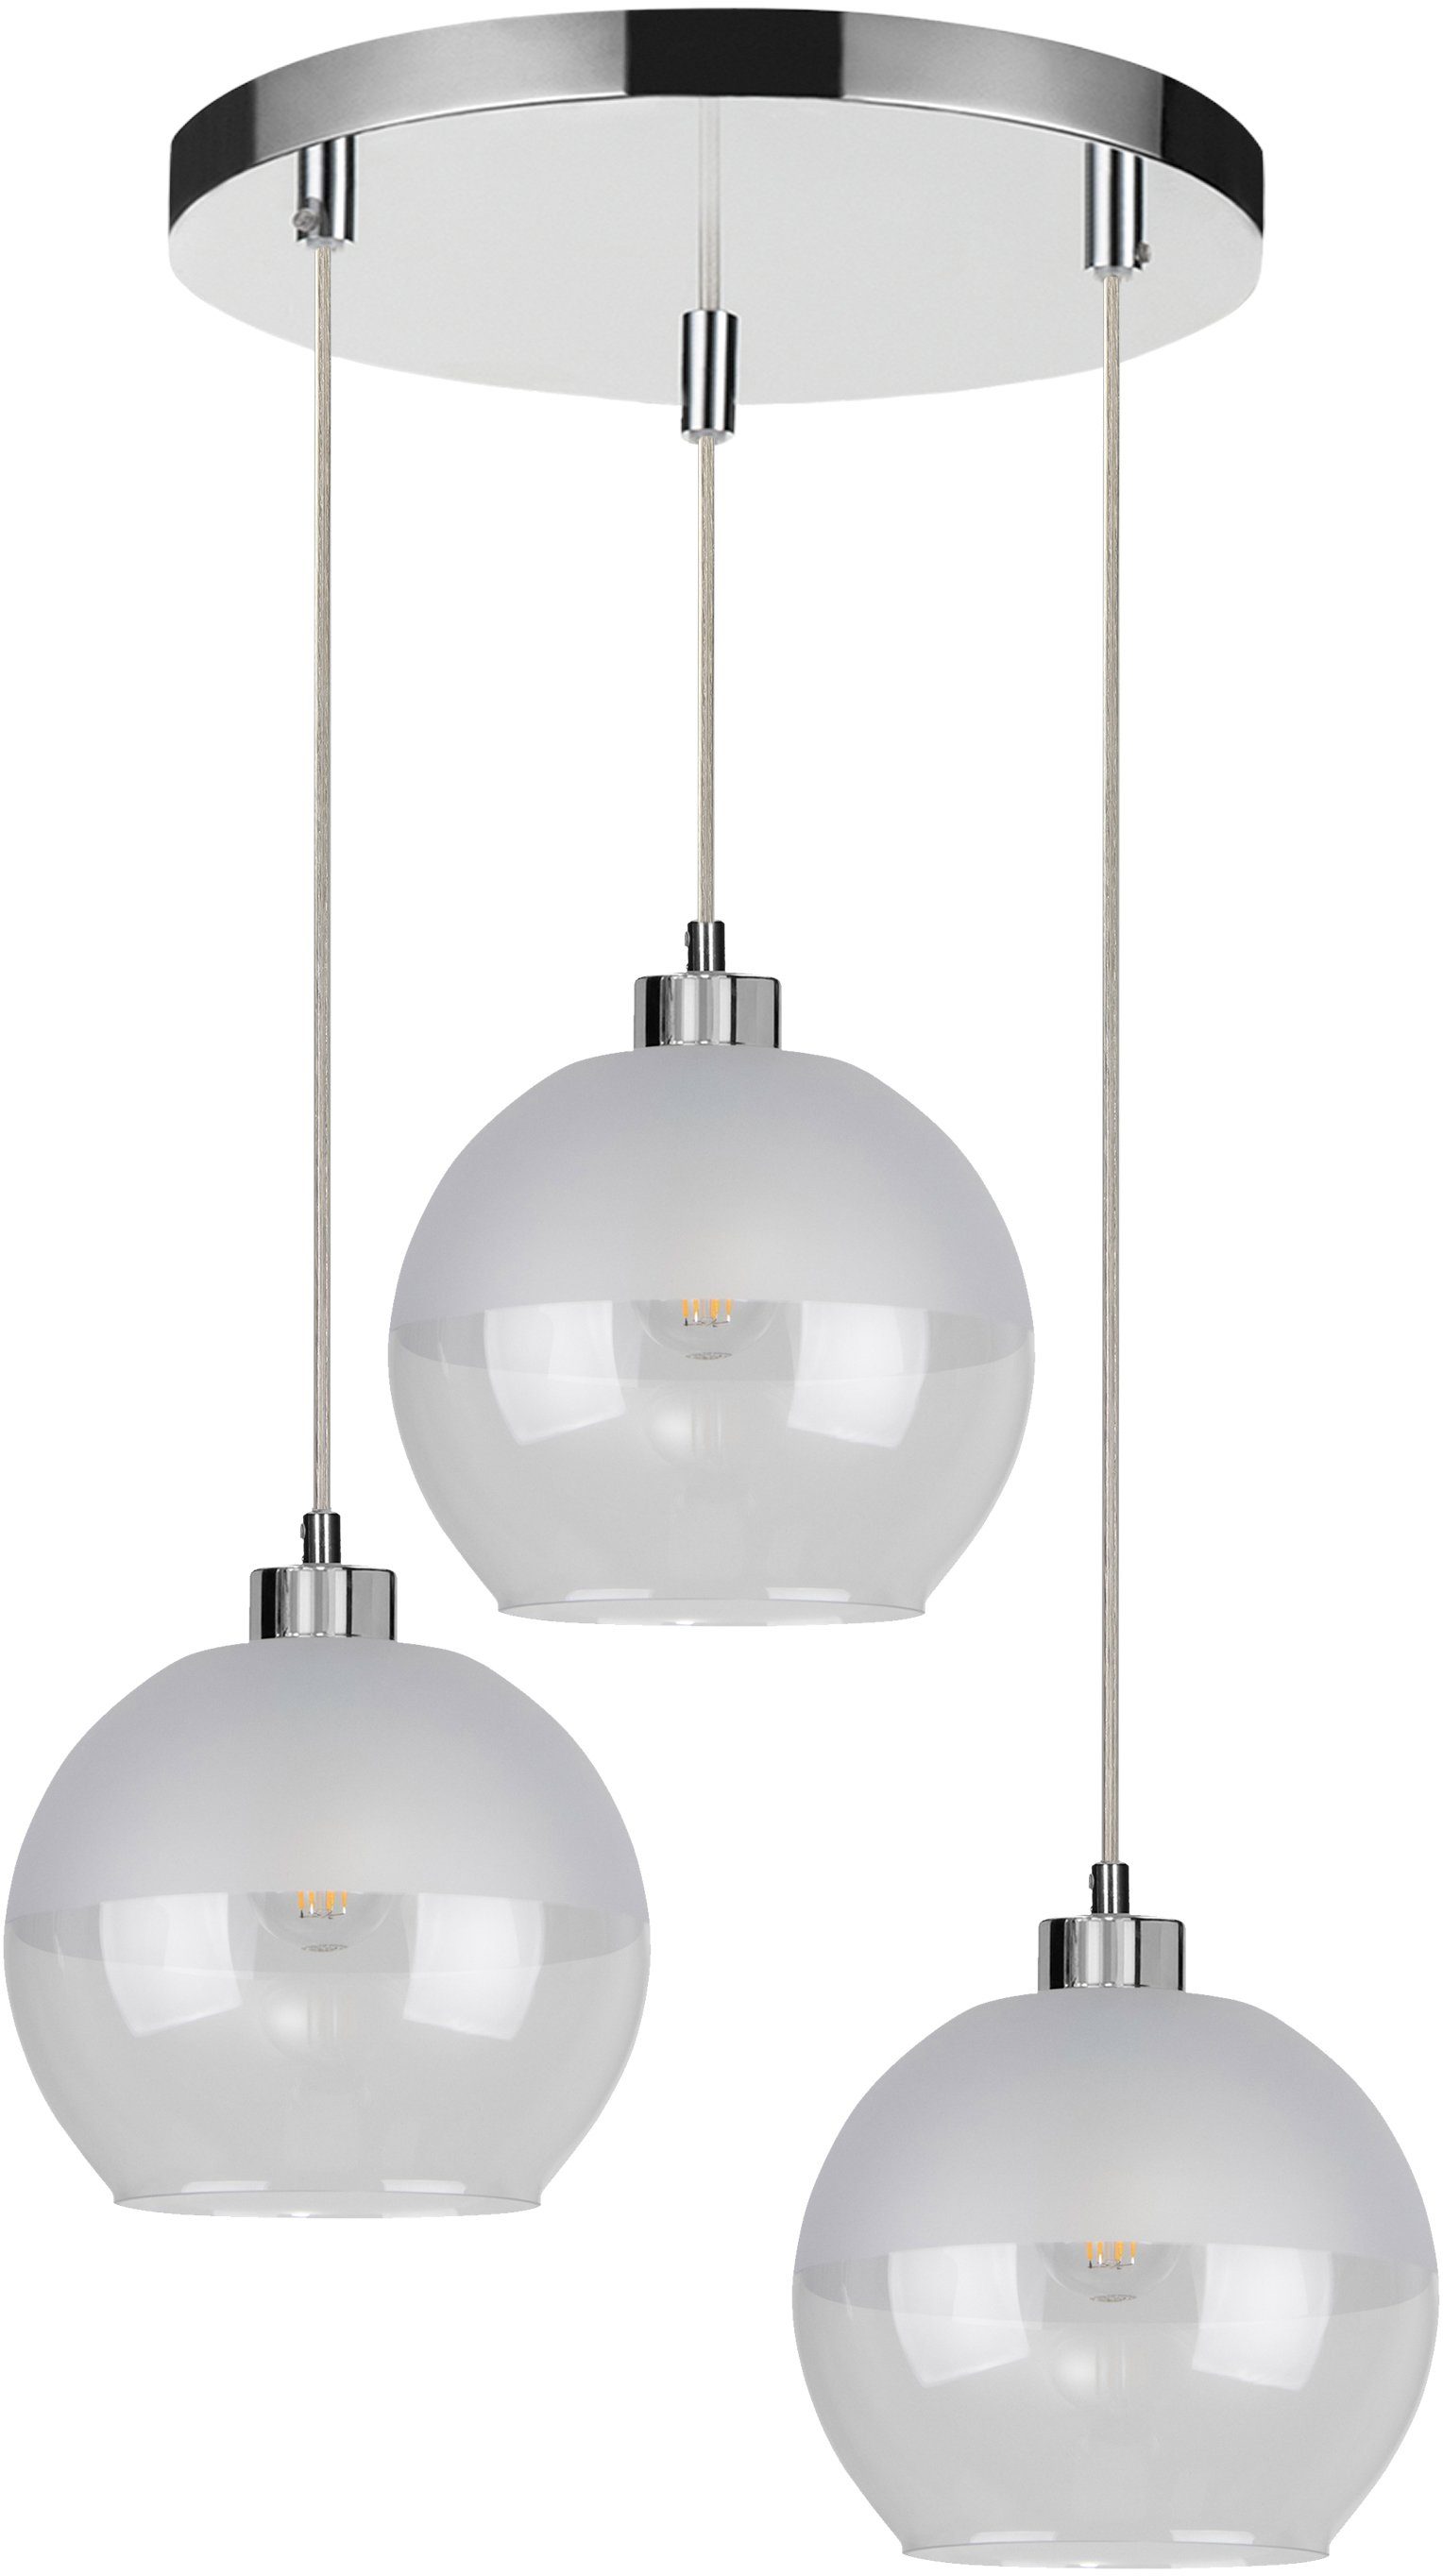 SPOT Light Hanglamp Fresh Hanglamp, lampenkap van glas, in de hoogte instelbaar / kabel in te korten, bijzonder decoratief door stijlvolle glas, geschikt voor ledlampen, Made in EU